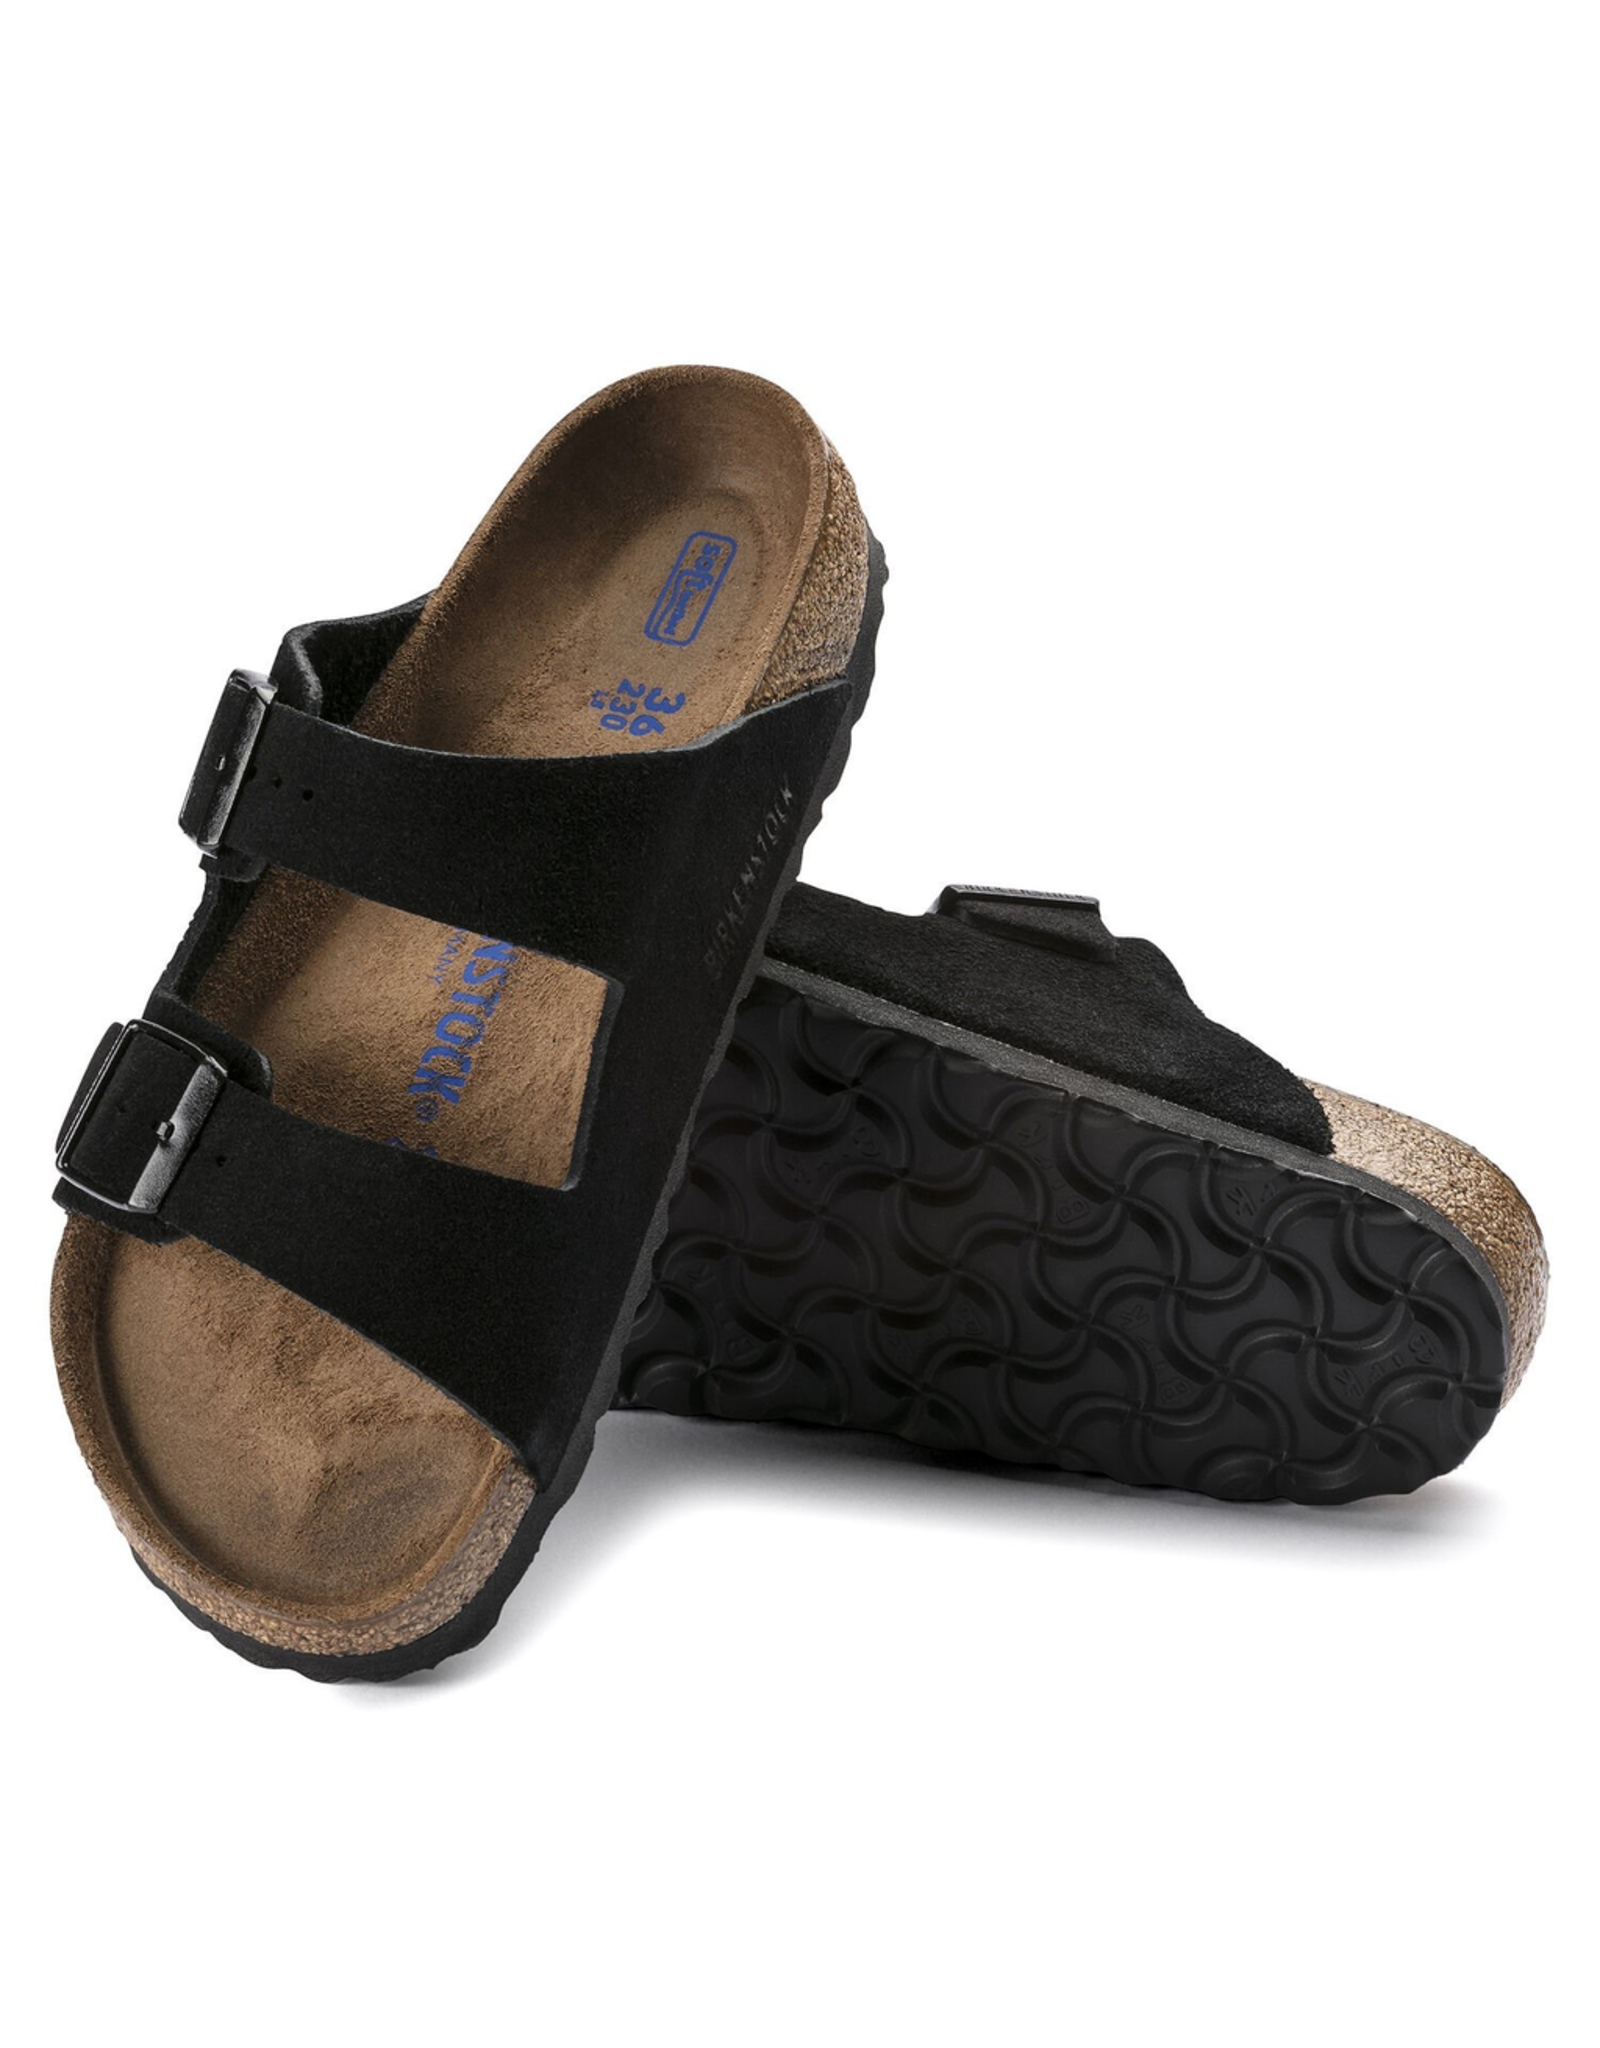 Birkenstock Black Suede Arizona Sandal Soft Footbed